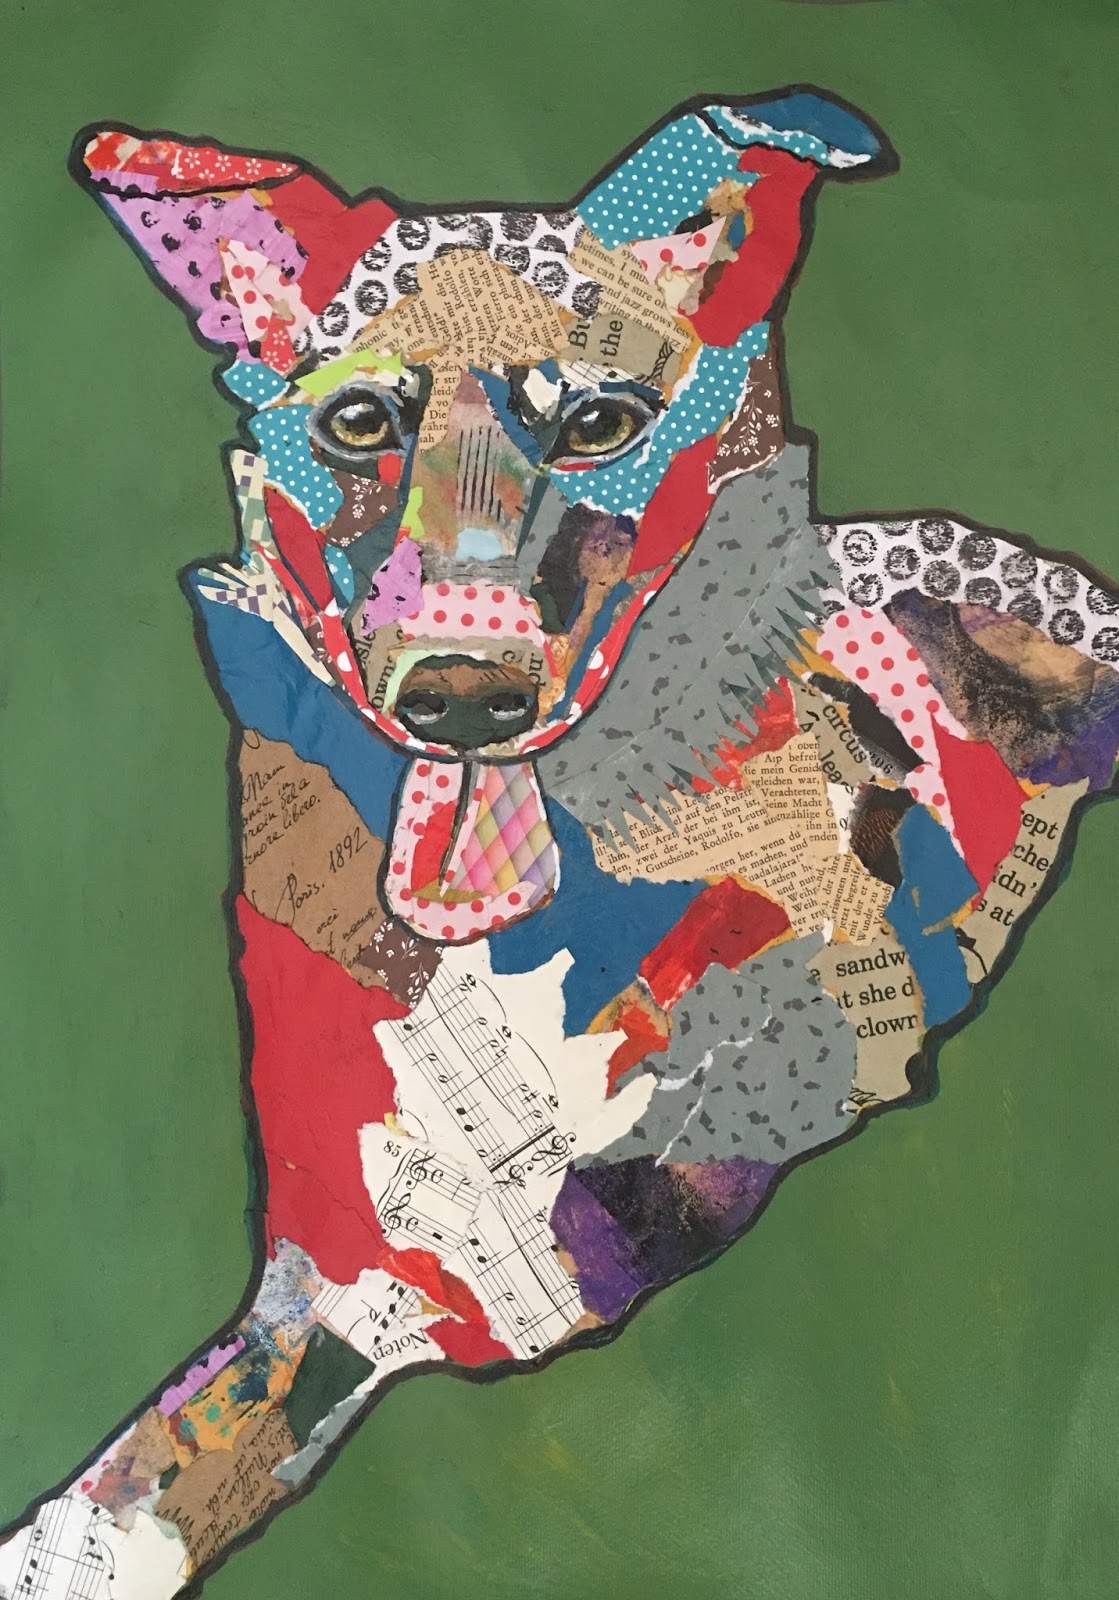 Art Room Britt: Paper Collage Pets - Adult Class